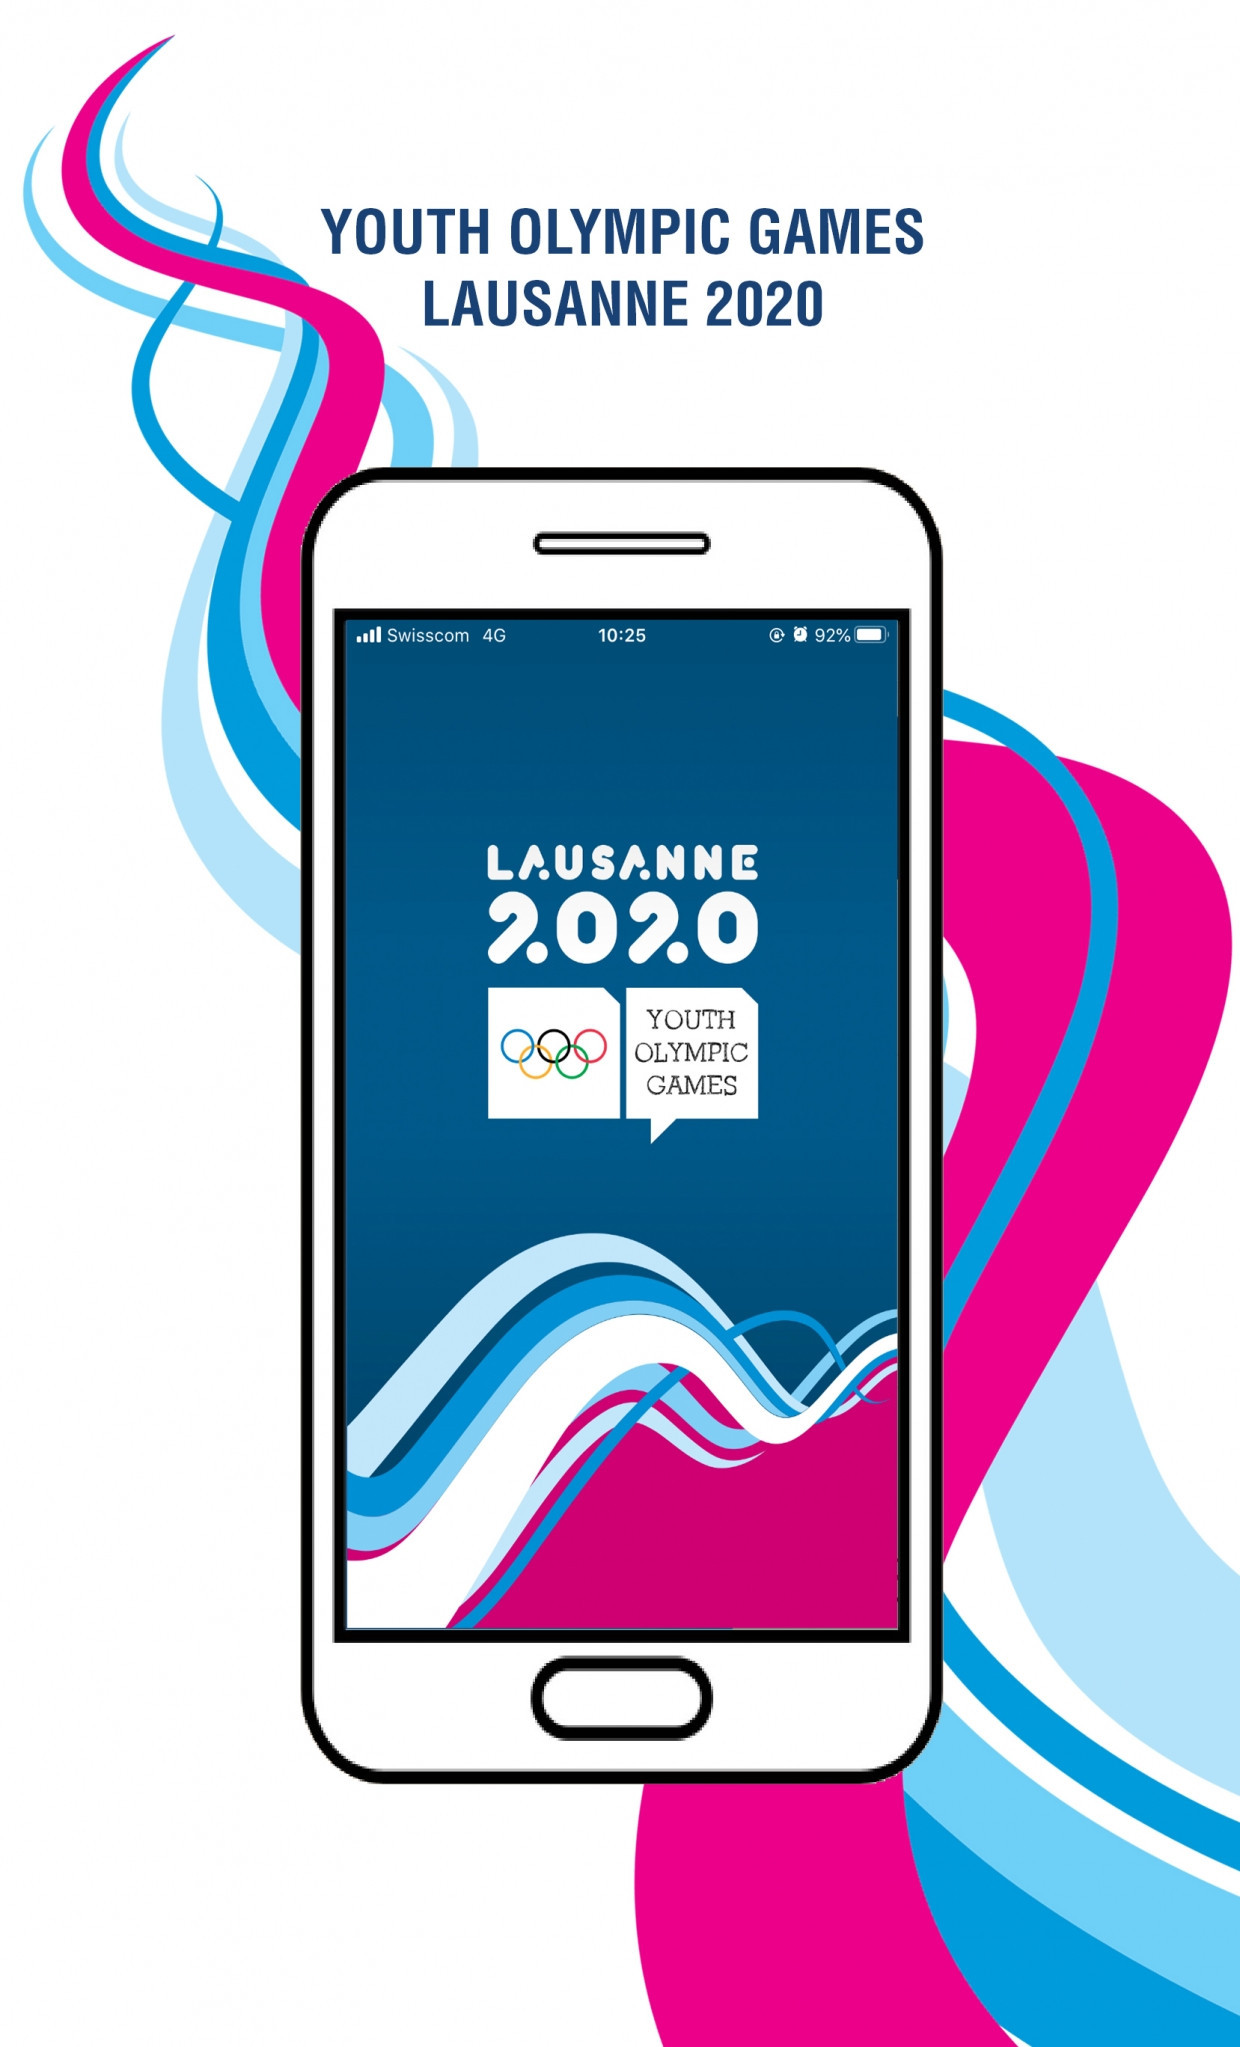 Lausanne 2020 launch mobile app